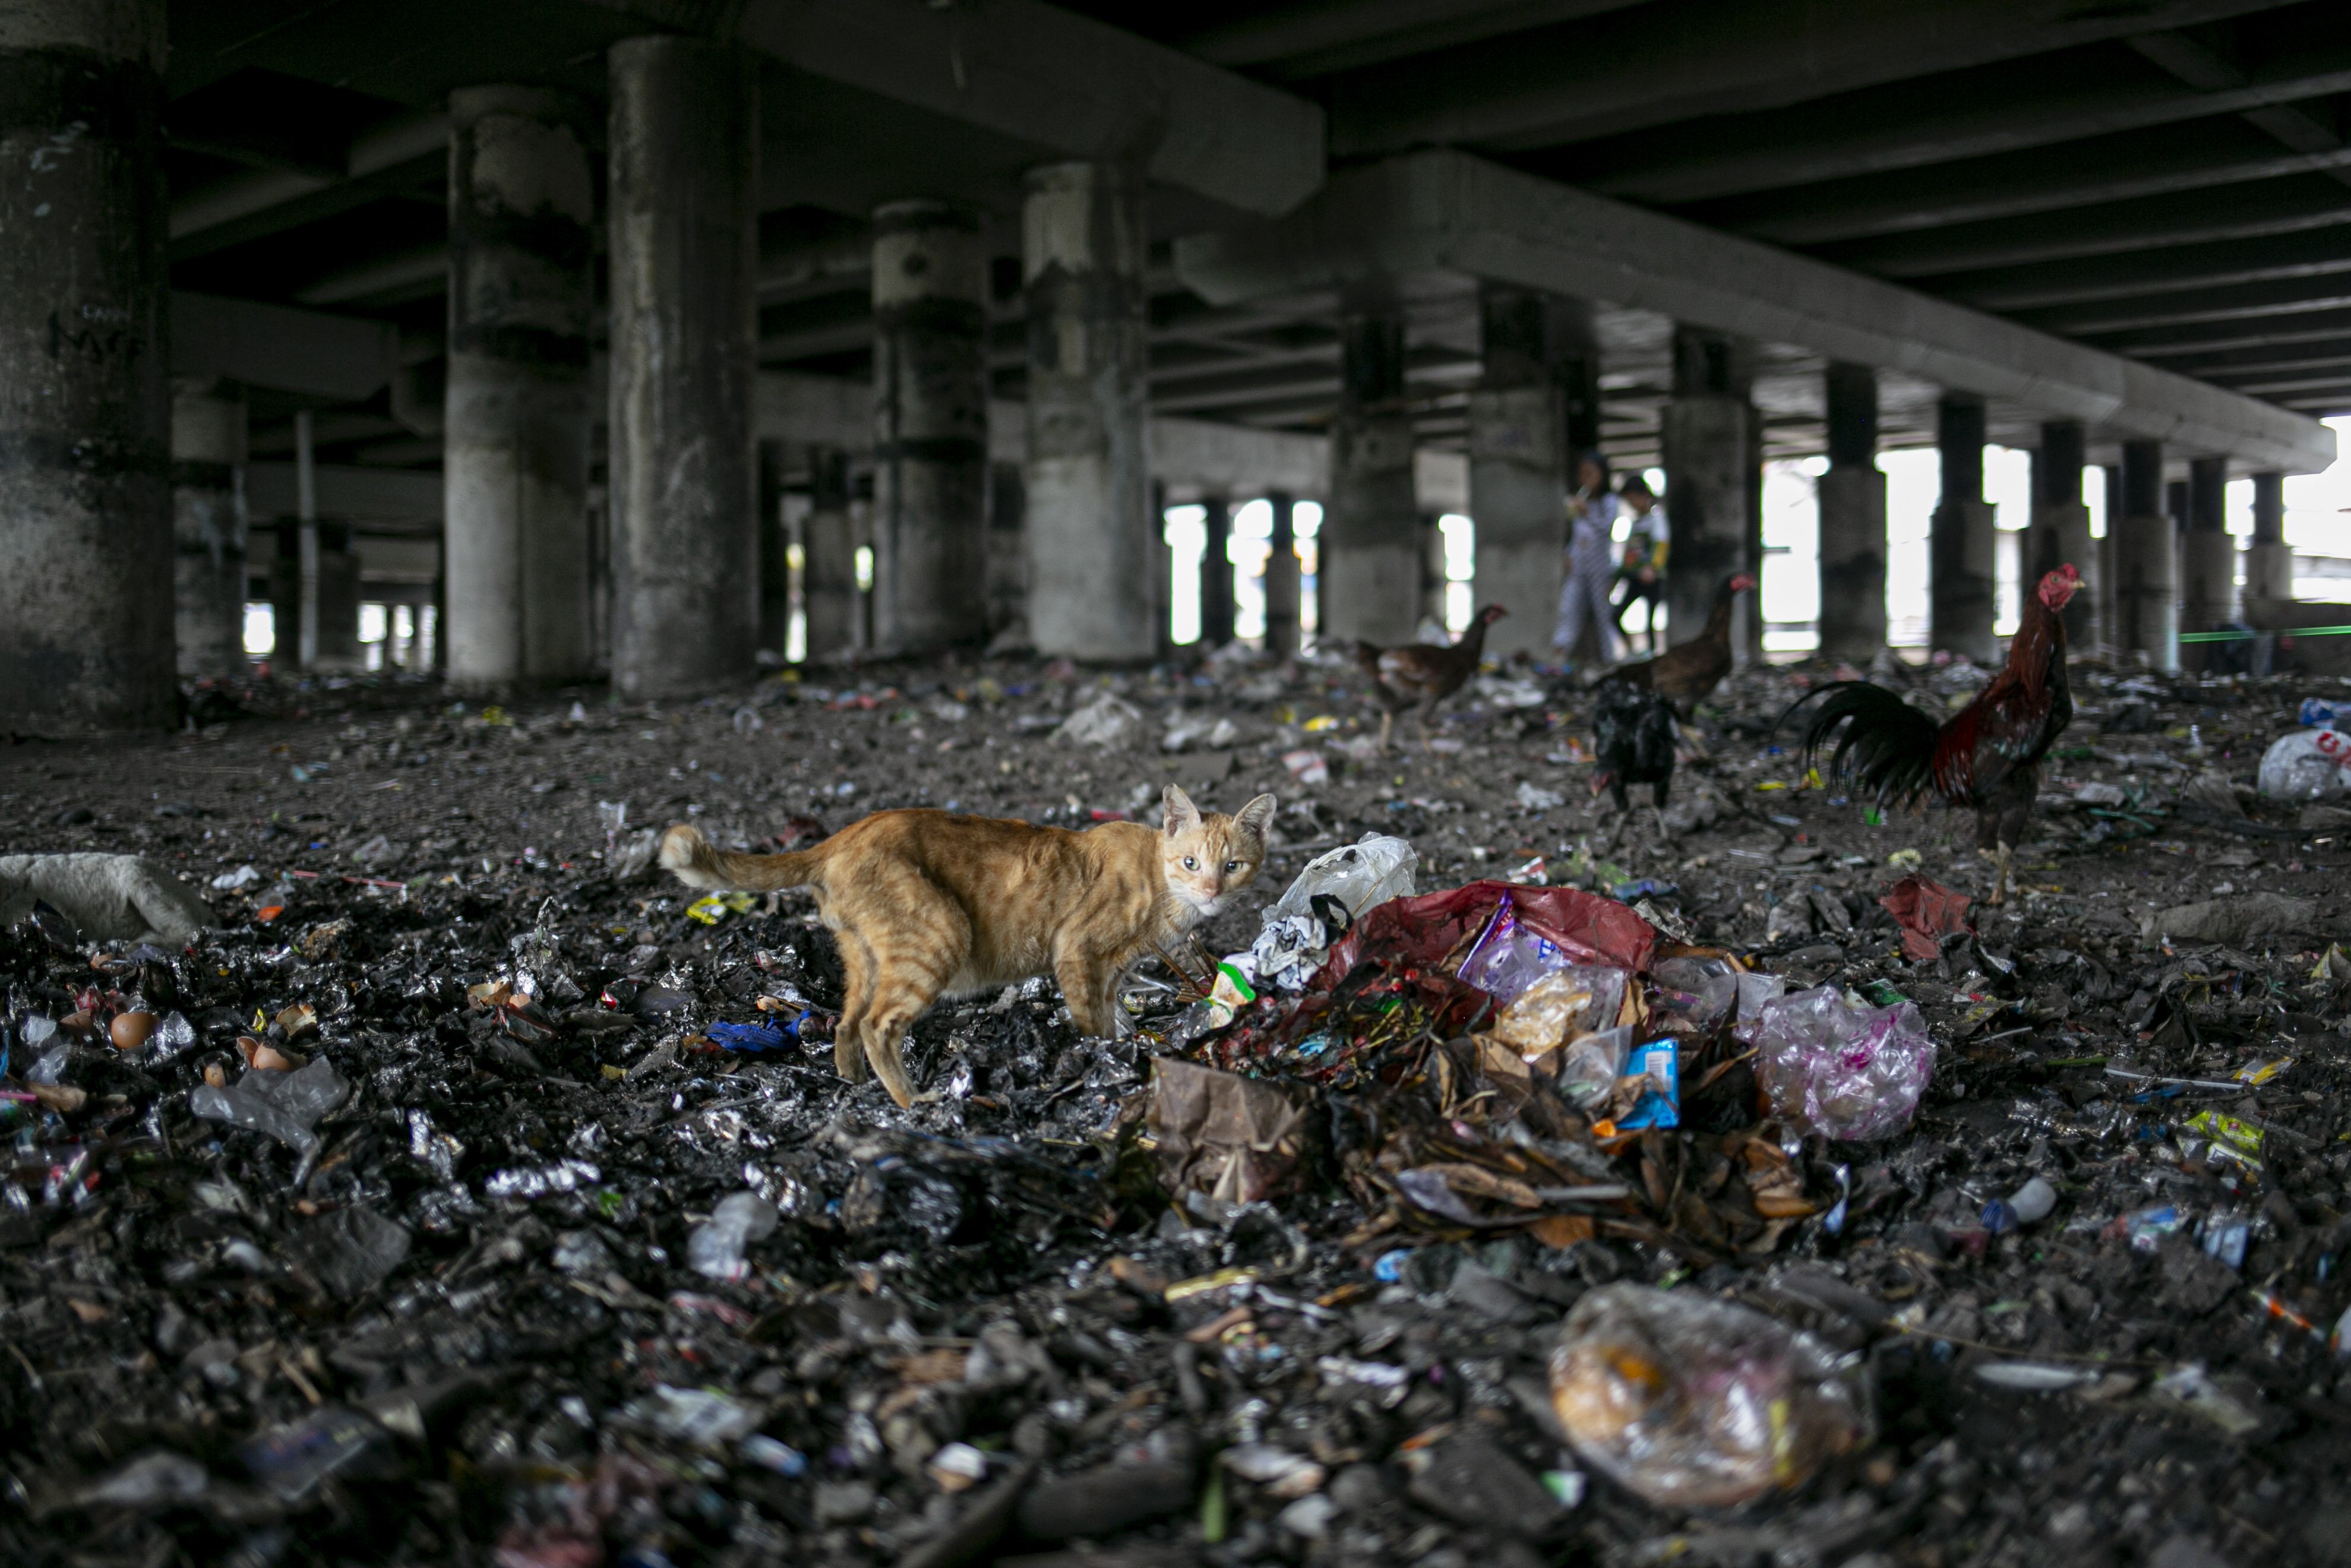 Seekor Kucing mencari makanan ditumpukan sampah di kolong Tol Ir. Wiyoto Wiyono di RW 08, Papanggo, Tanjung Priok, Jakarta Utara.